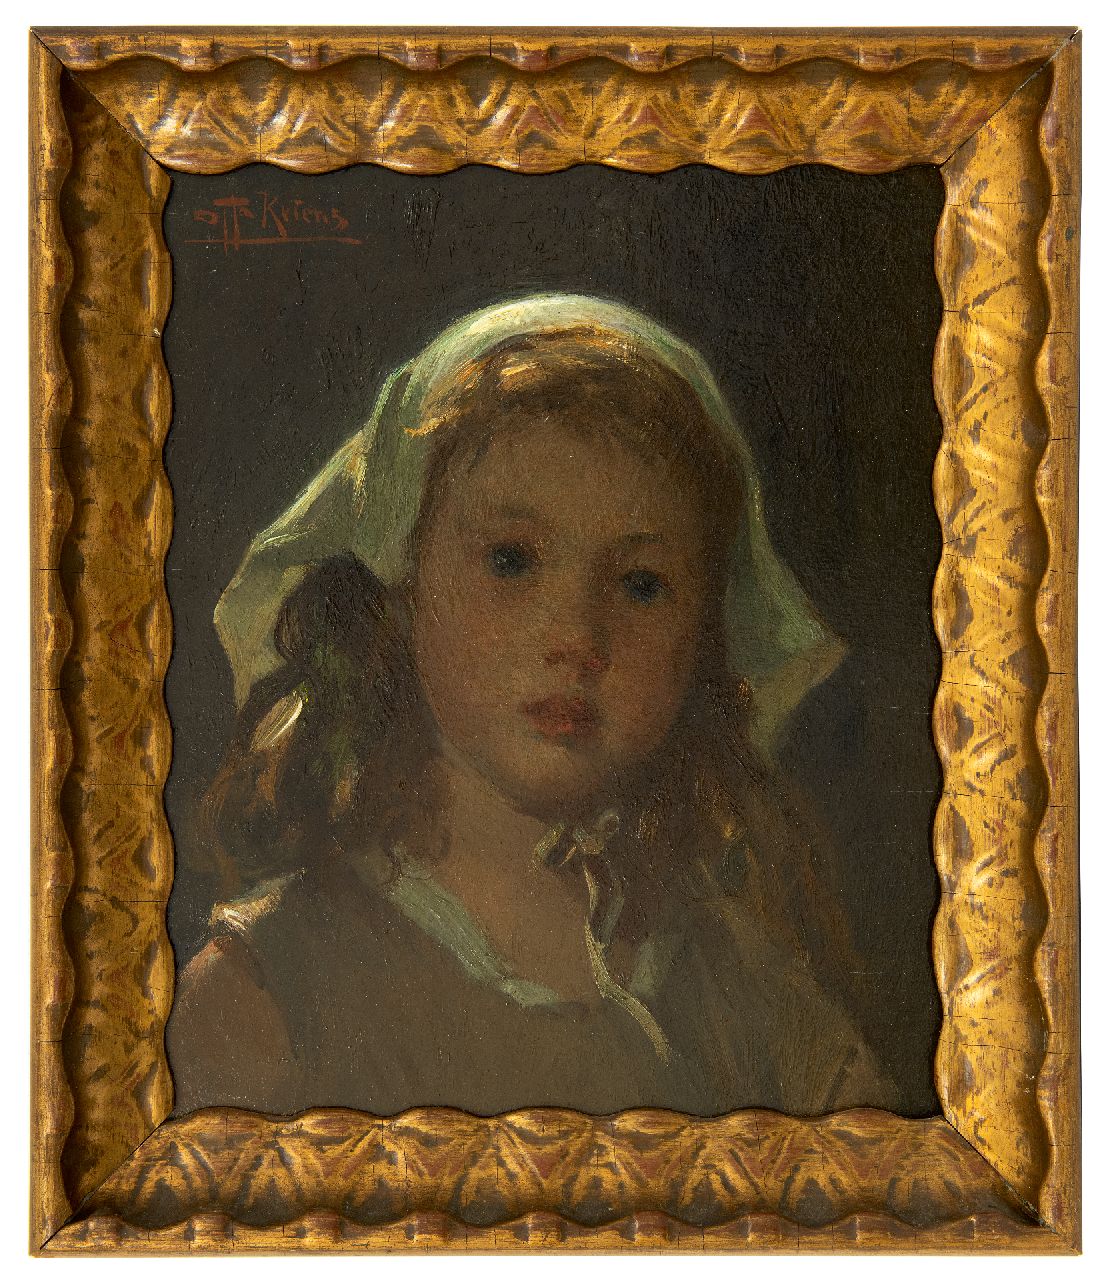 Kriens O.G.A.  | 'Otto' Gustav Adolf Kriens | Schilderijen te koop aangeboden | Meisjeskopje, olieverf op paneel 33,0 x 27,2 cm, gesigneerd linksboven